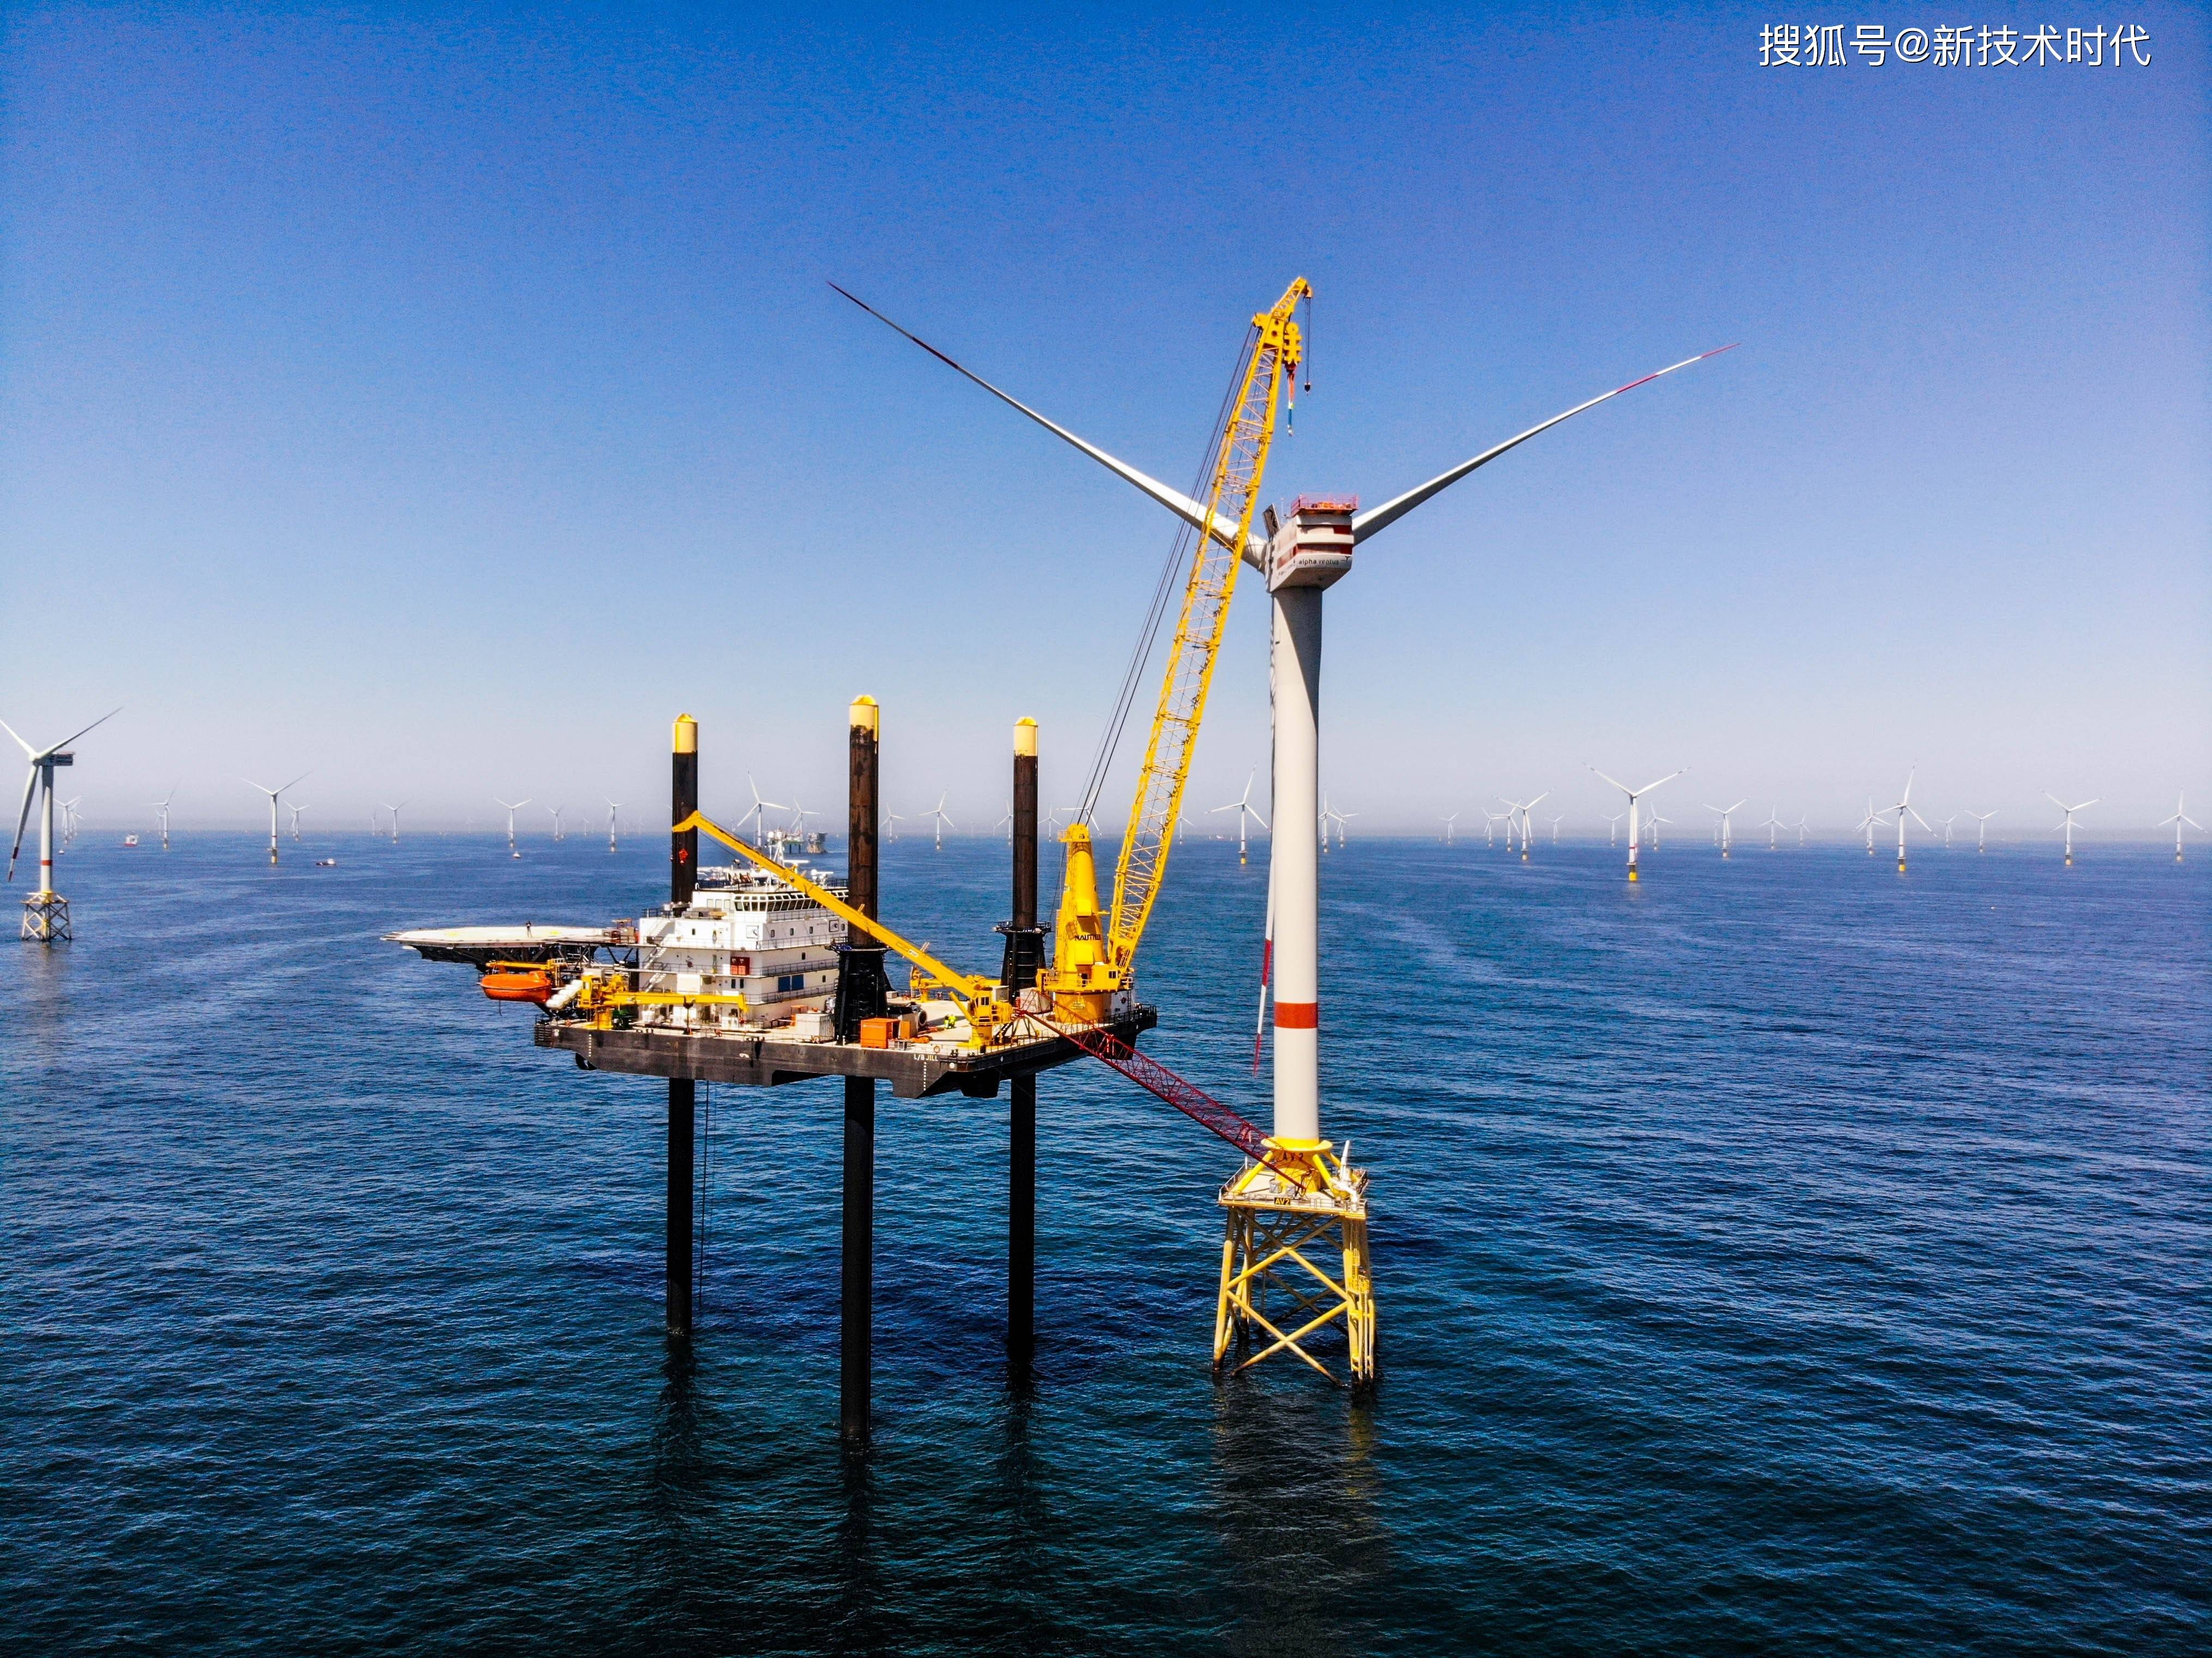 全球风电风能发展让这款船成为海洋工程瑞士军刀